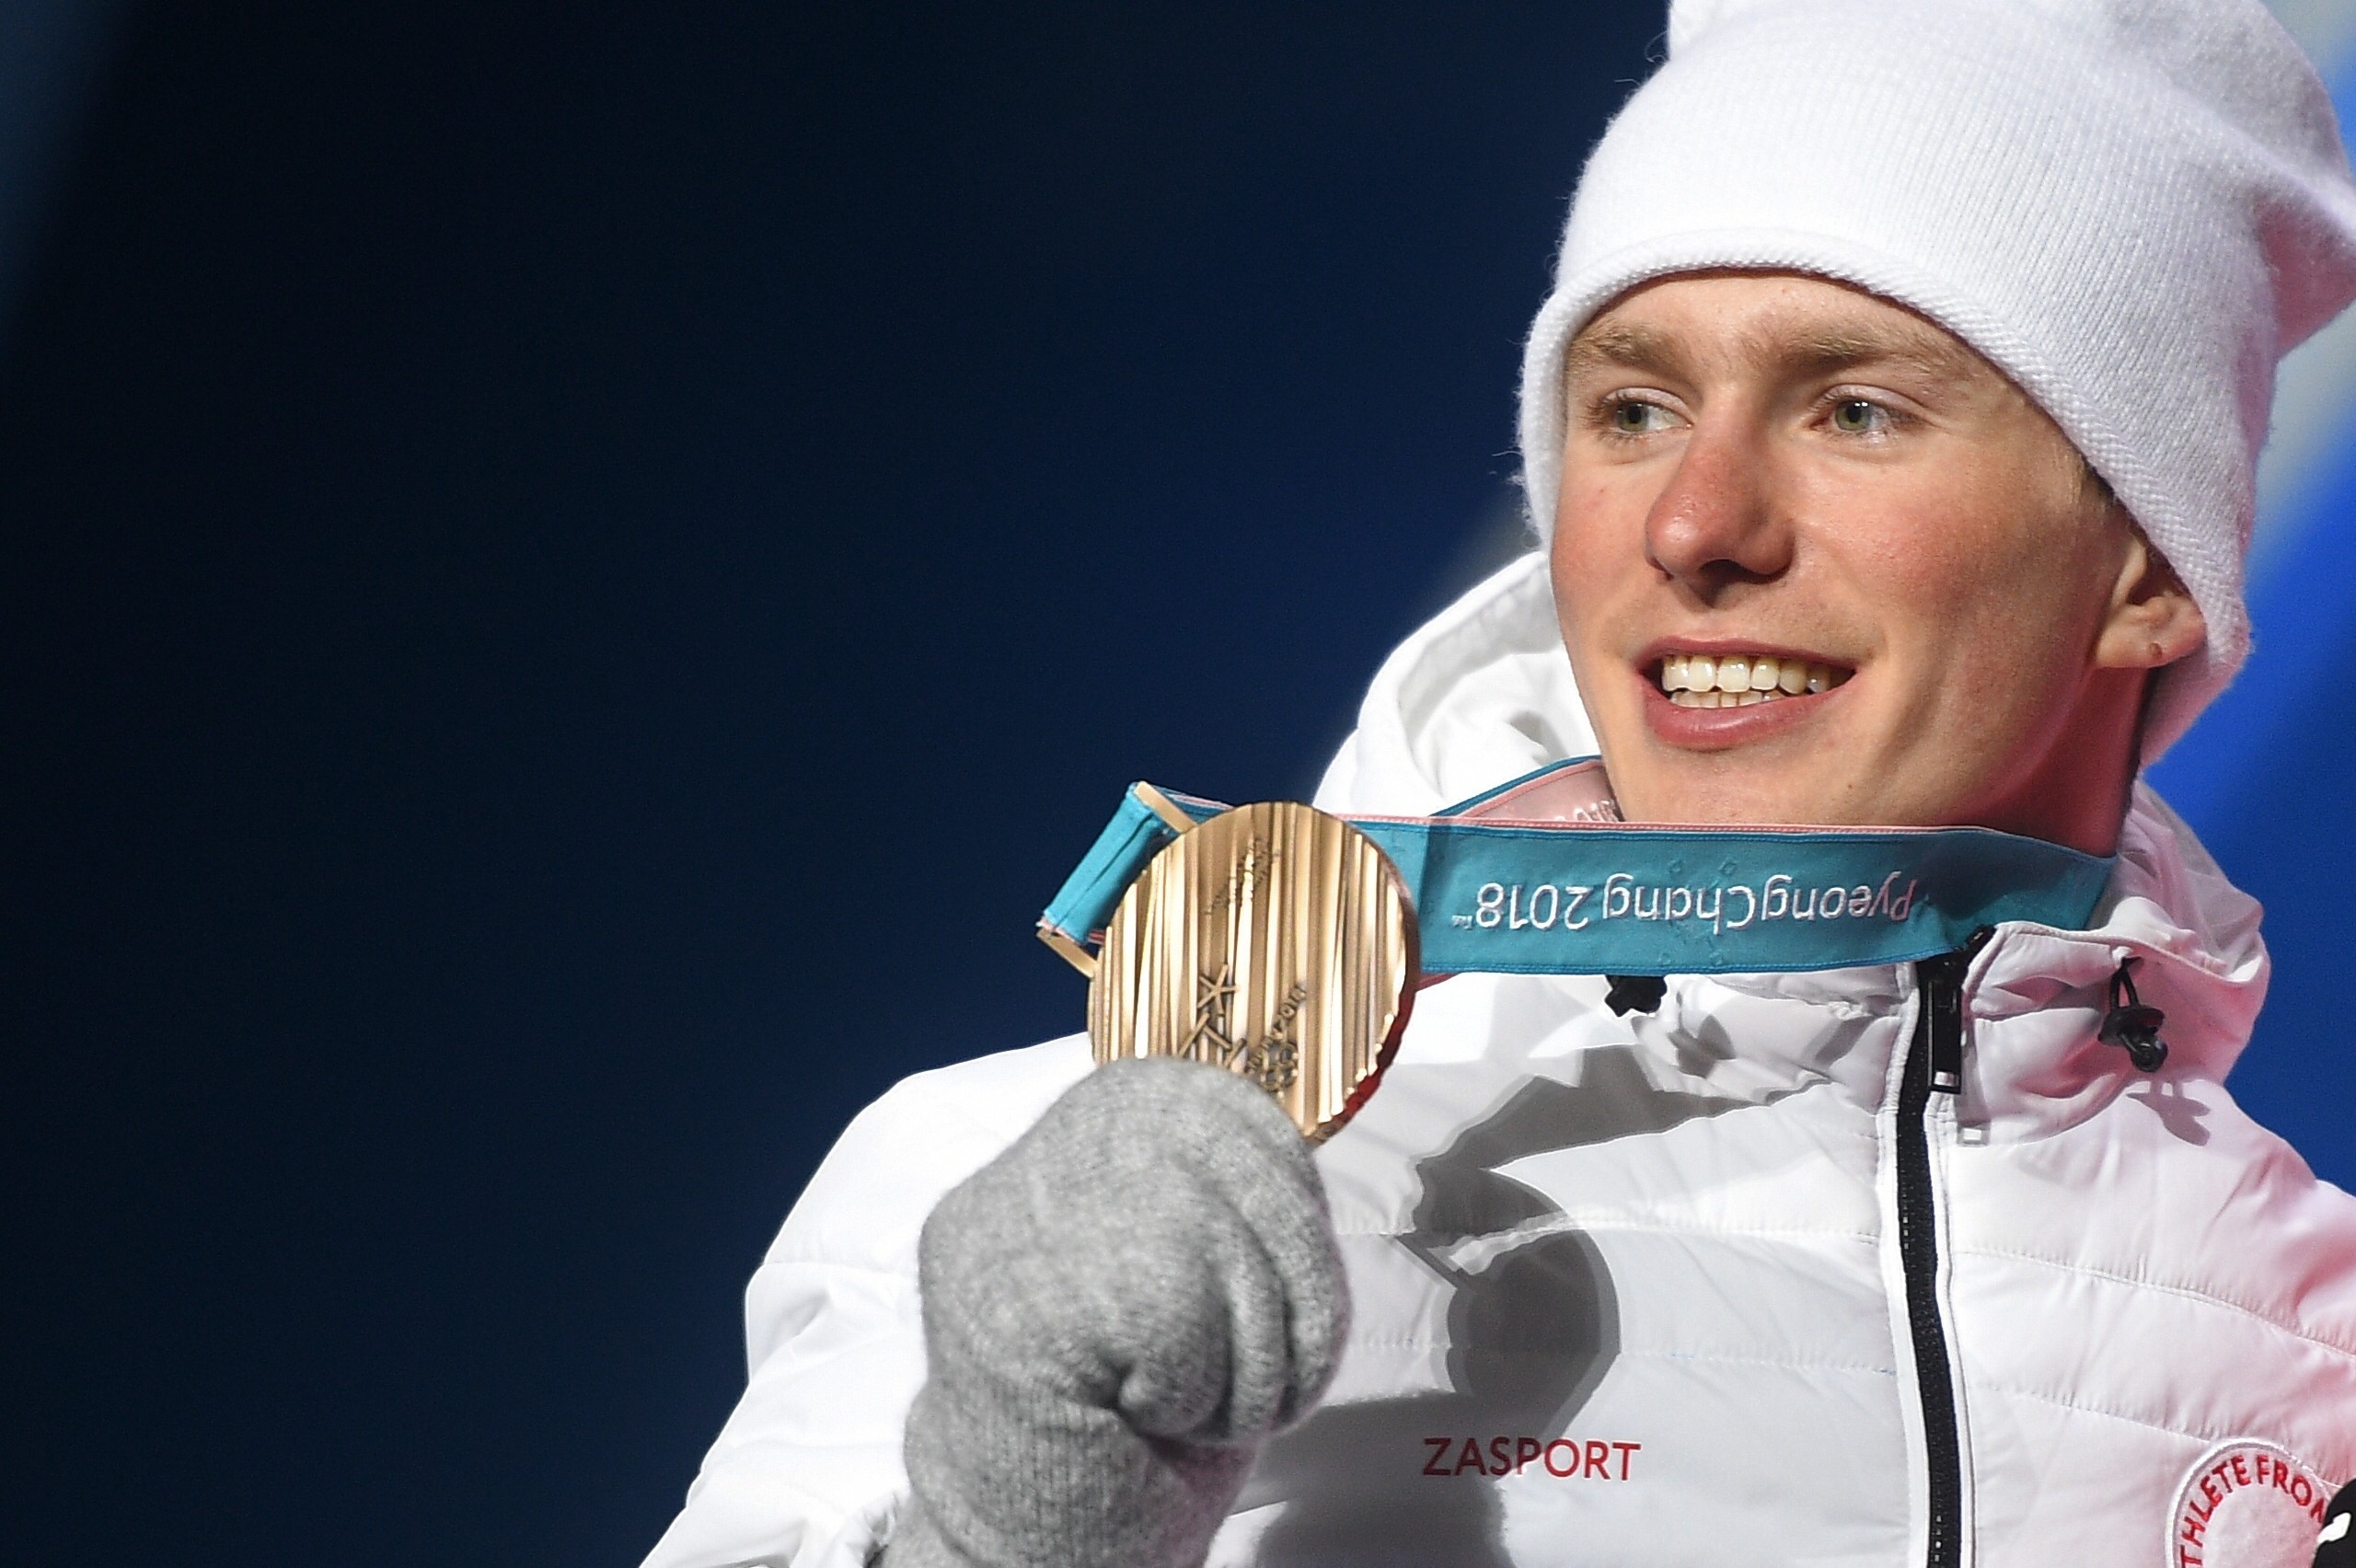 Бронзовую медаль получил российский лыжник Денис Спицов, который стал третьим в гонке на 15 км свободным стилем. Фото: © РИА Новости/Владимир Астапкович